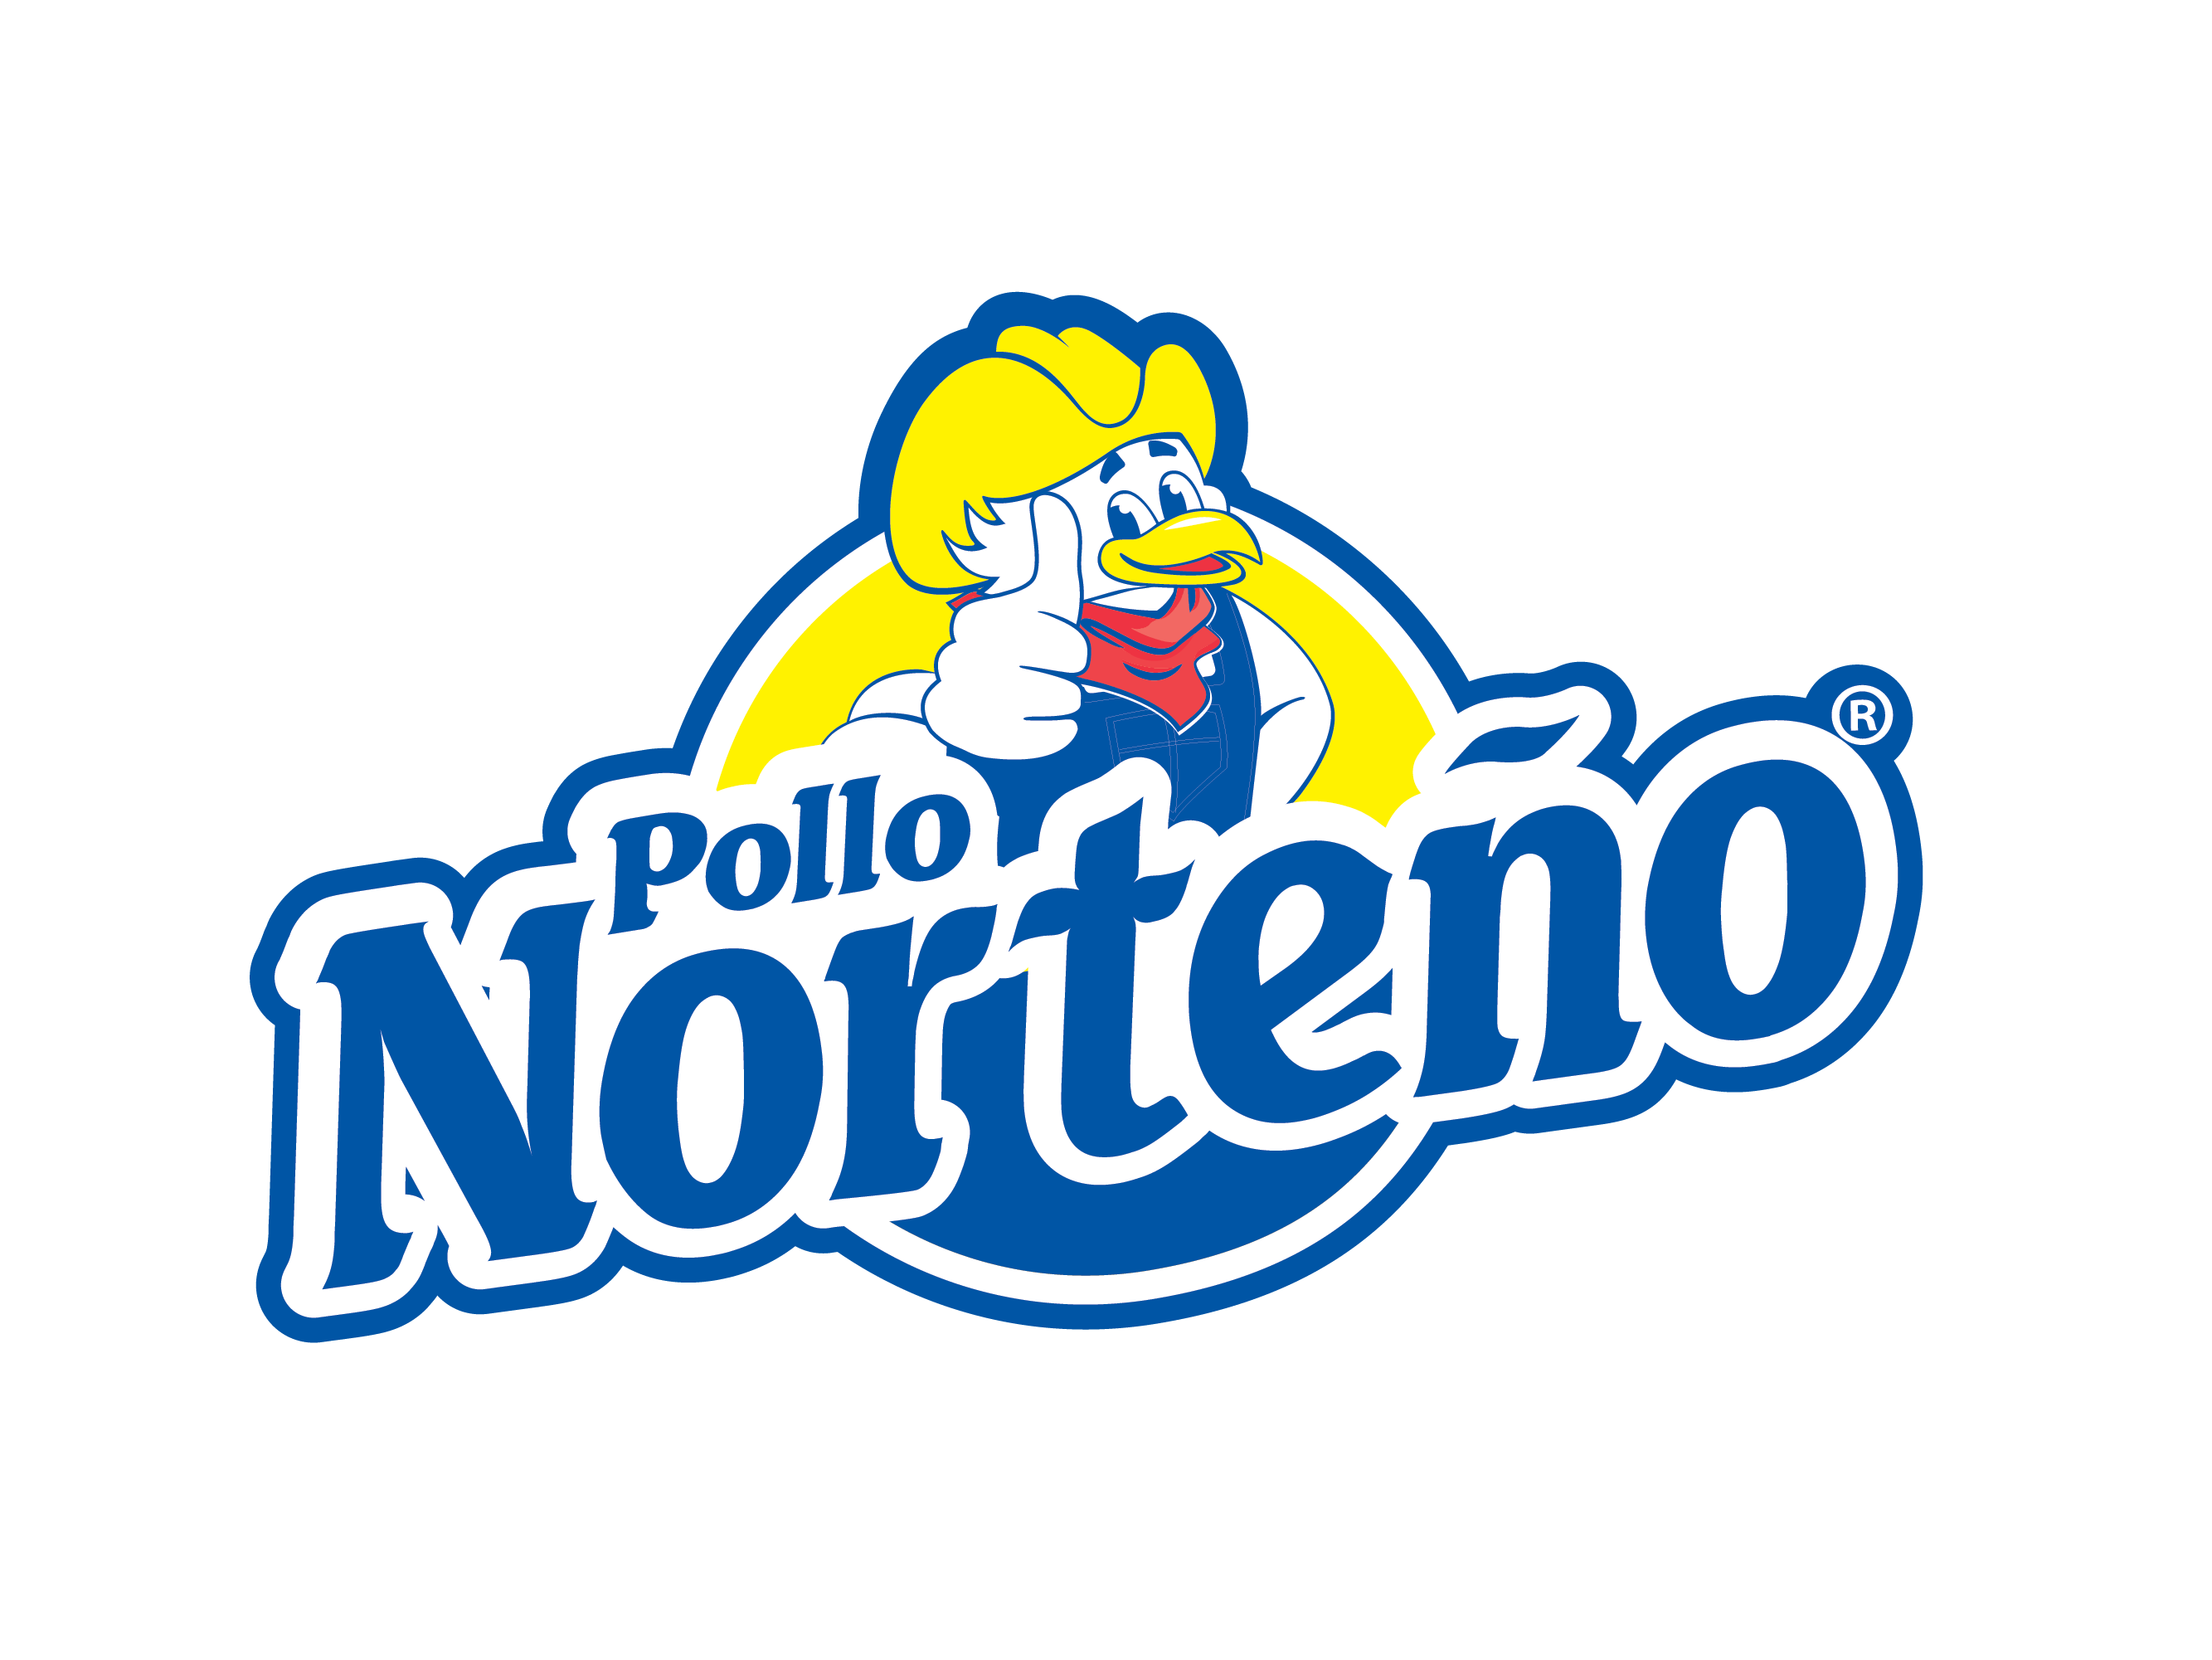 Pollo Norteno logo